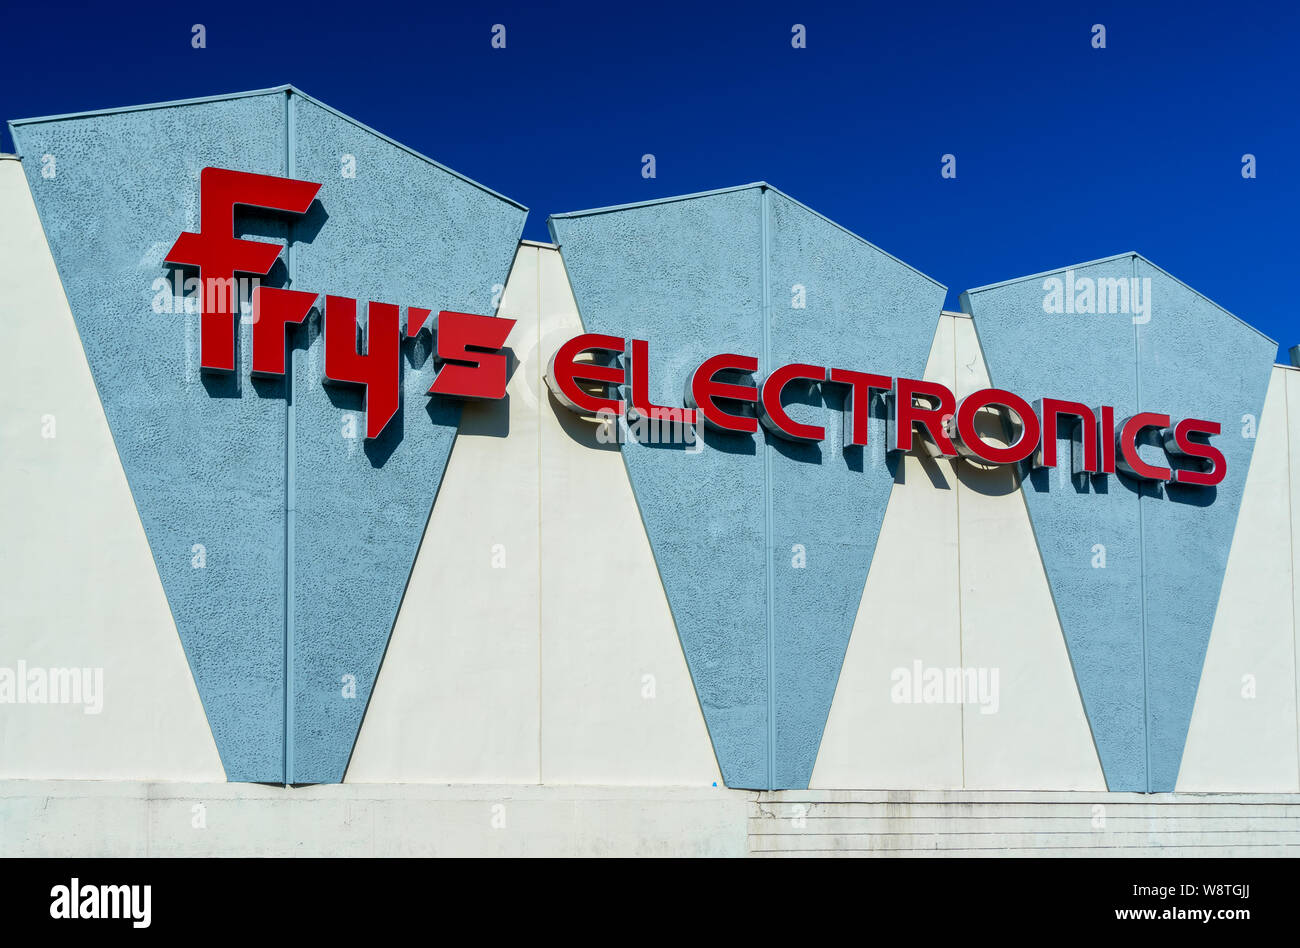 BURBANK, CA/USA - 19 septembre 2015 : Fry's Electronics store extérieur. Fry's est un magasin à grande surface de vente au détail de logiciels, l'électronique grand public, des ménages Banque D'Images